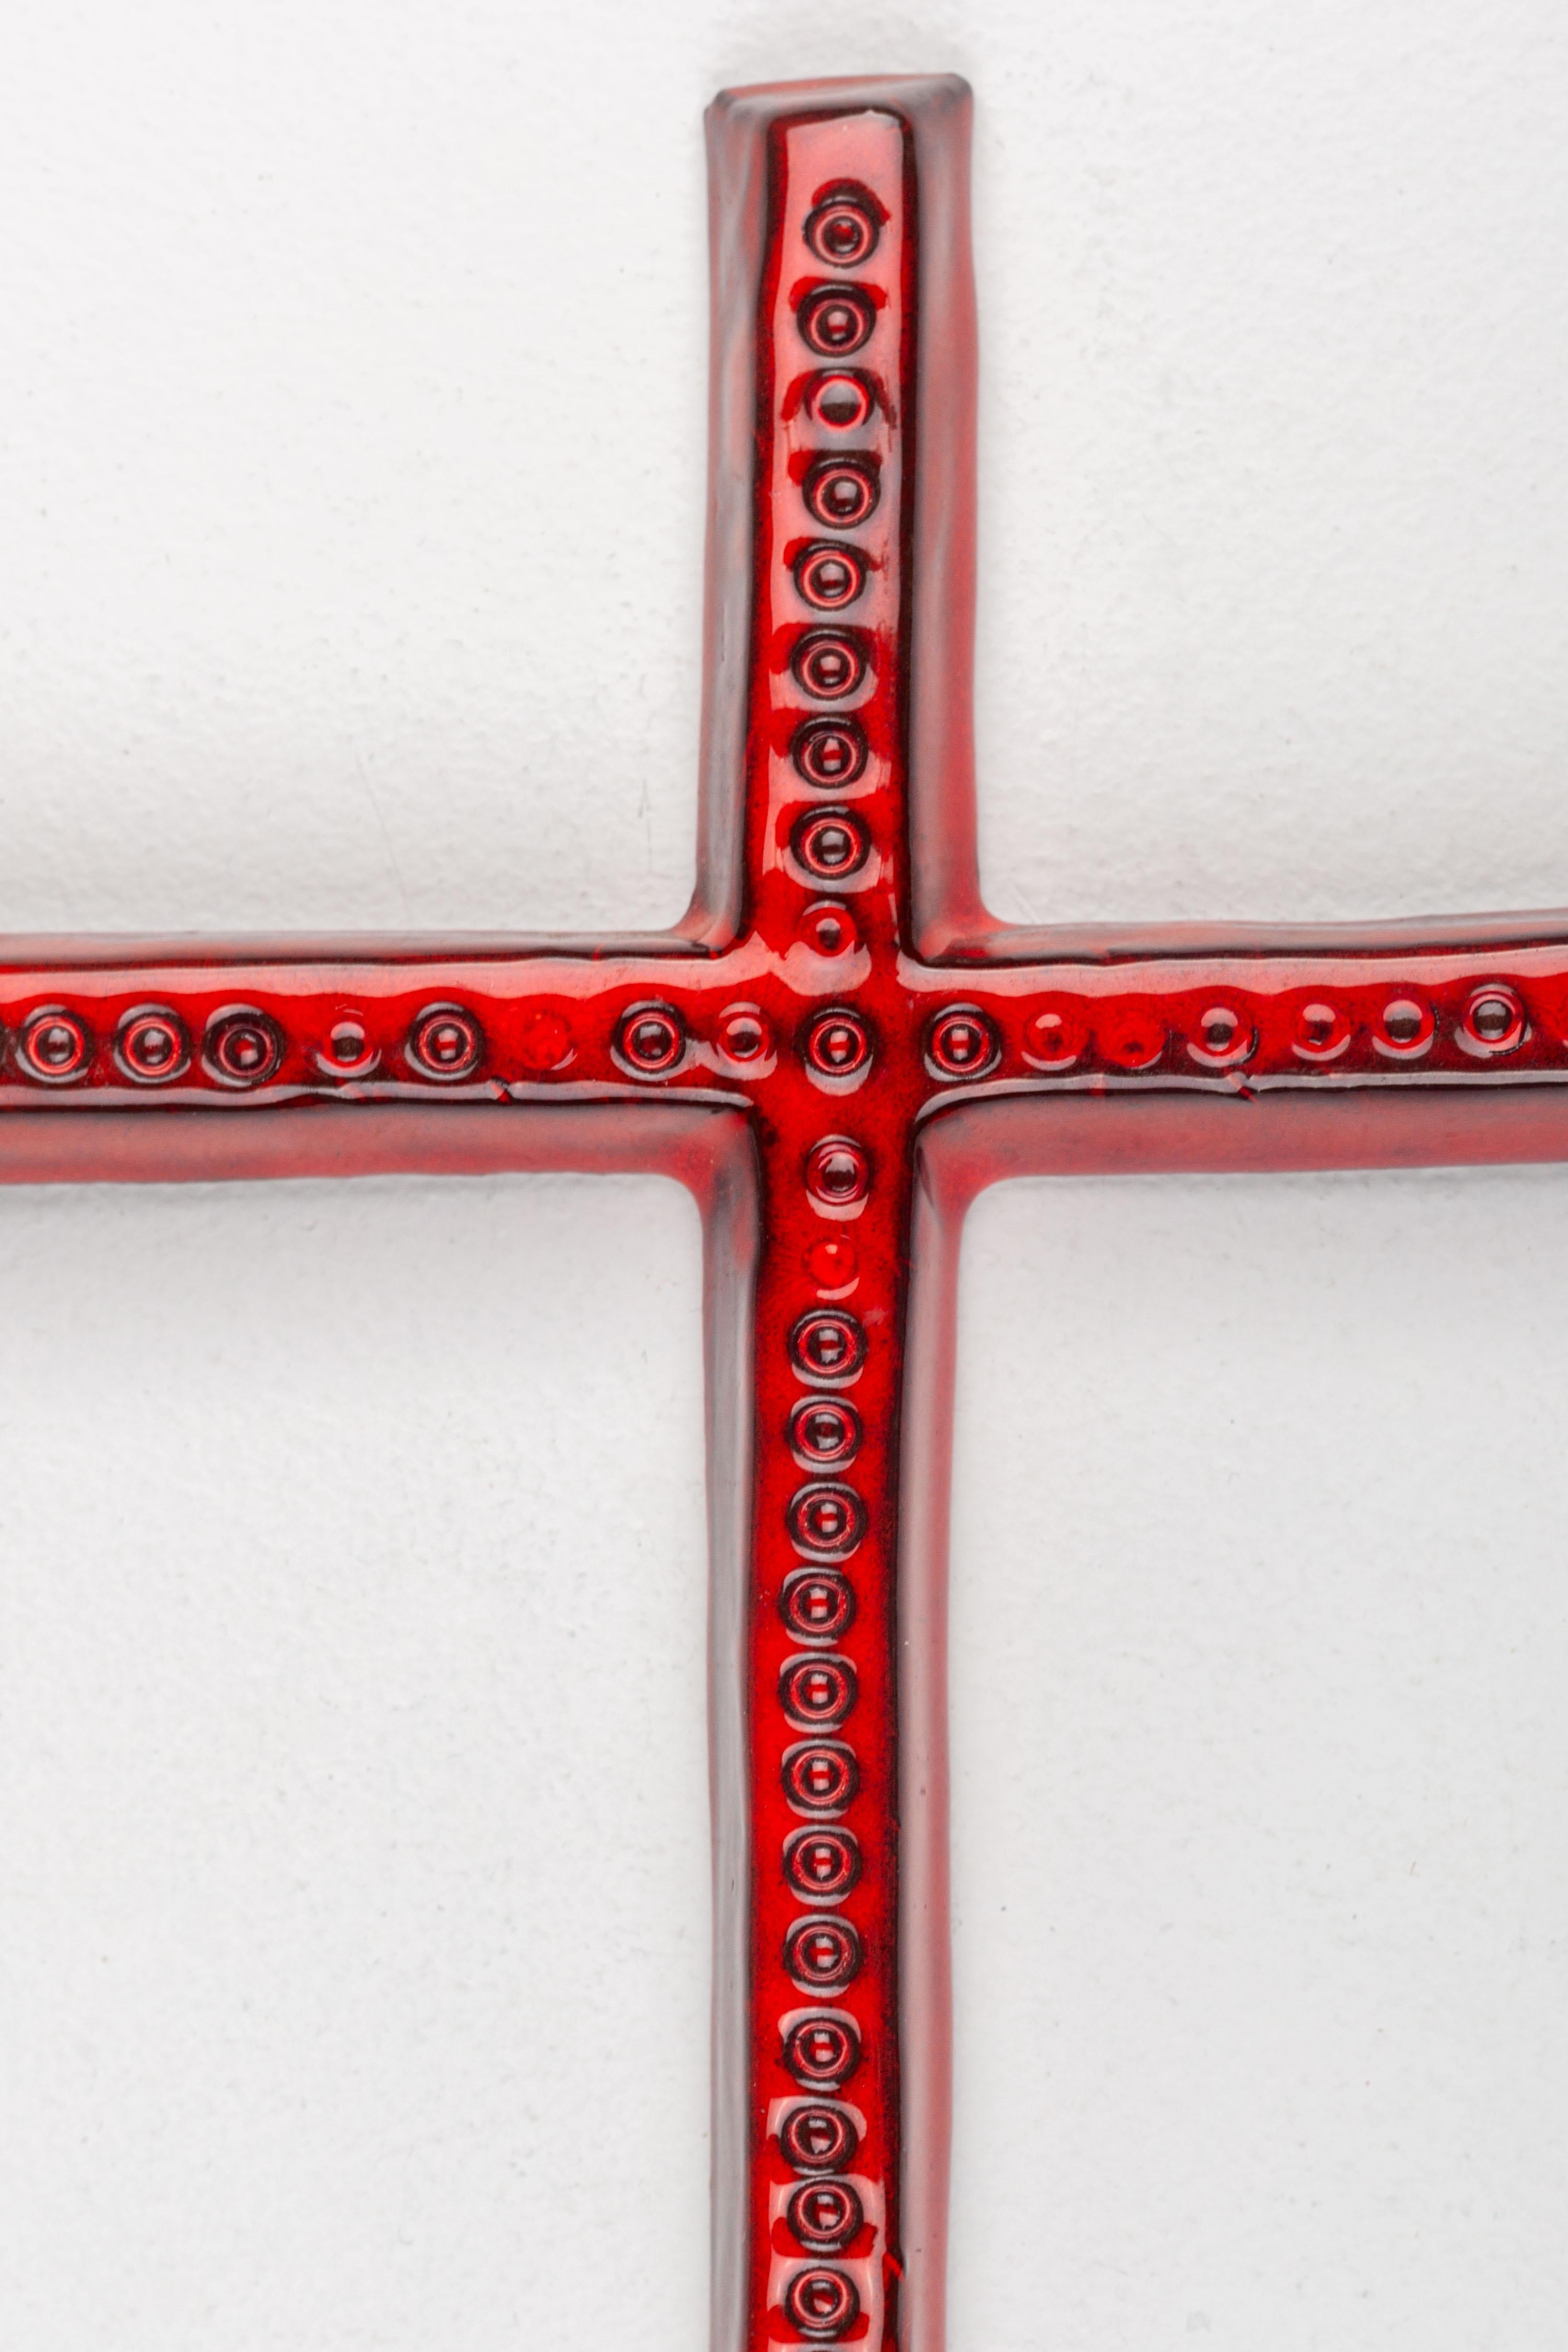 Cette croix murale moderniste en céramique European Studio Pottery se caractérise par sa forme élancée et sa finition rouge brillante, ornée d'un motif de cercles en relief qui s'étend sur toute la face de la croix, rappelant des éléments du